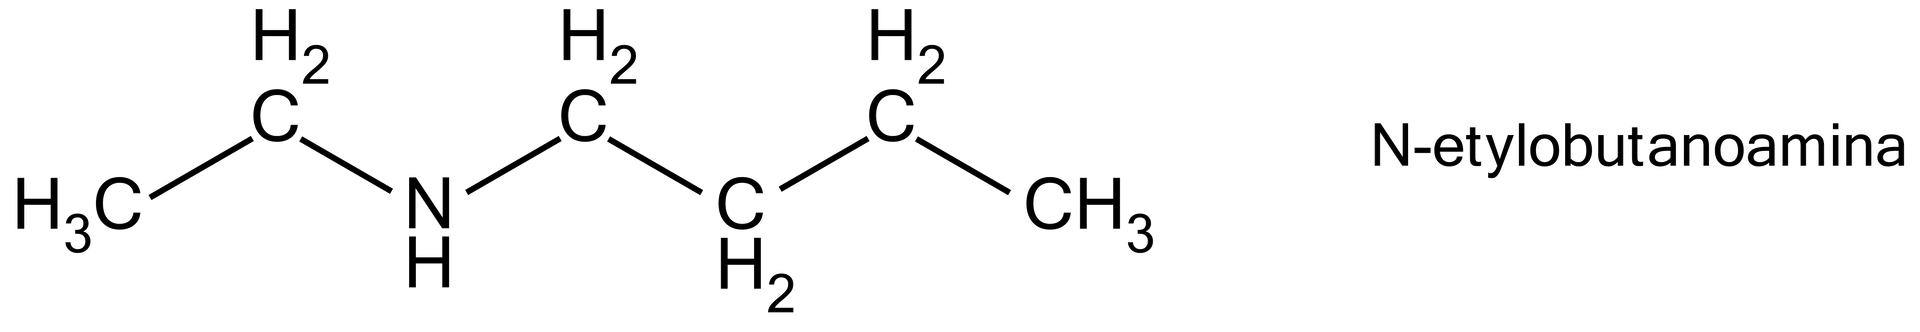 Na ilustracji jest N‑etylobutanoamina. Łańcuch główny w kształcie zygzaka. Od lewej strony zbudowany jest z: grupy metylowej, grupy metylenowej, grupy NH, grupy metylenowej, grupy metylenowej, grupy metylenowej, grupy metylowej. 